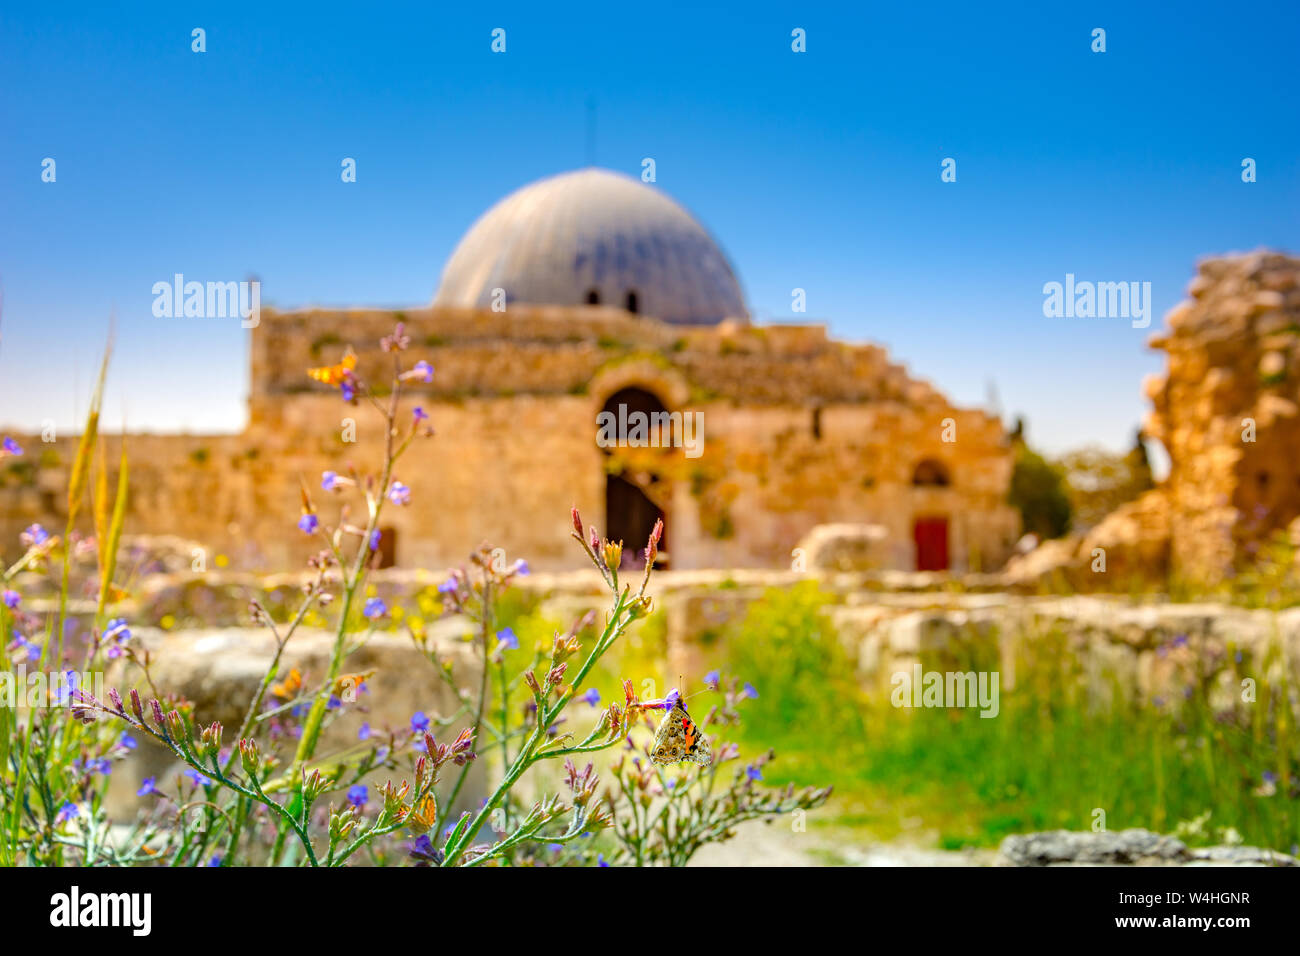 Umayyad Palace at the Amman Citadel, Jordan Stock Photo